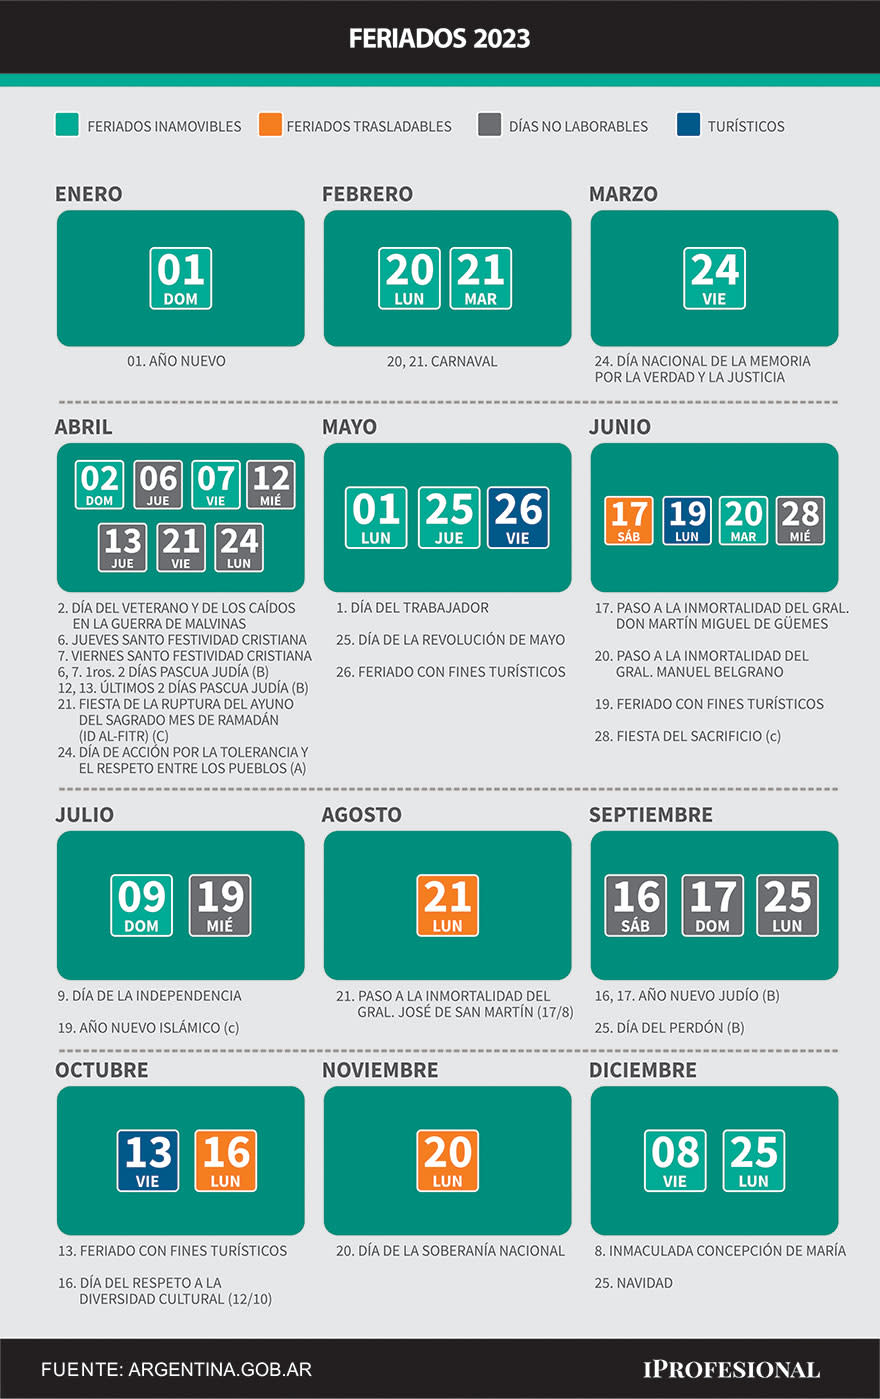 Este es el calendario oficial de feriados de la Argentina para 2023.